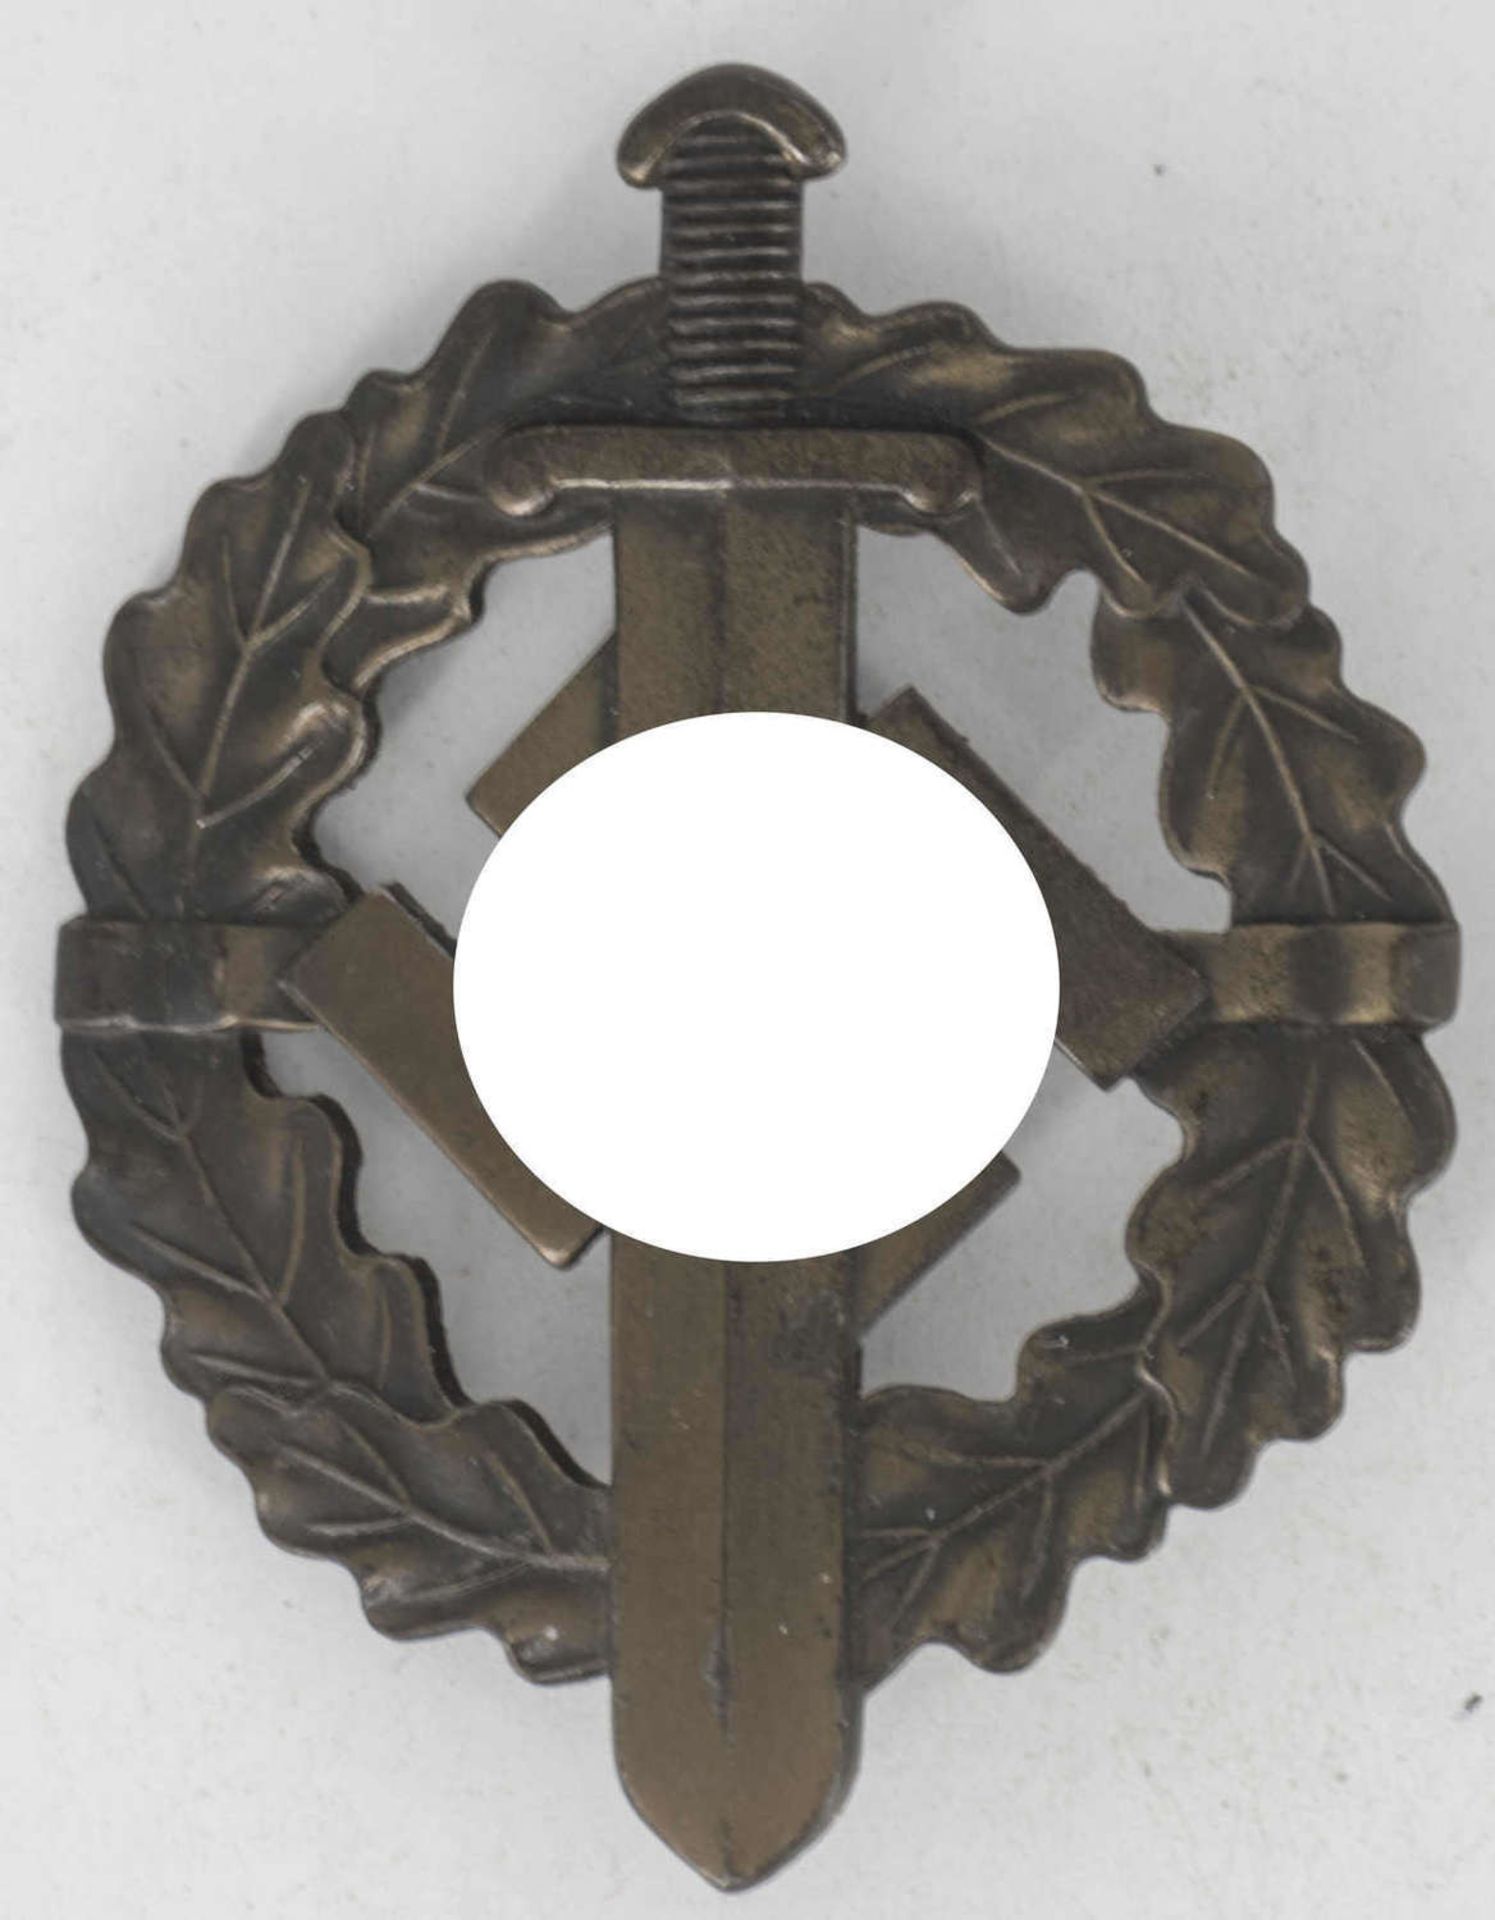 SA - Sportabzeichen in Bronze Typ 2, 1935 - 38. Hohlprägung, Rückseitig Inschrift: "Eigentum D.S.A